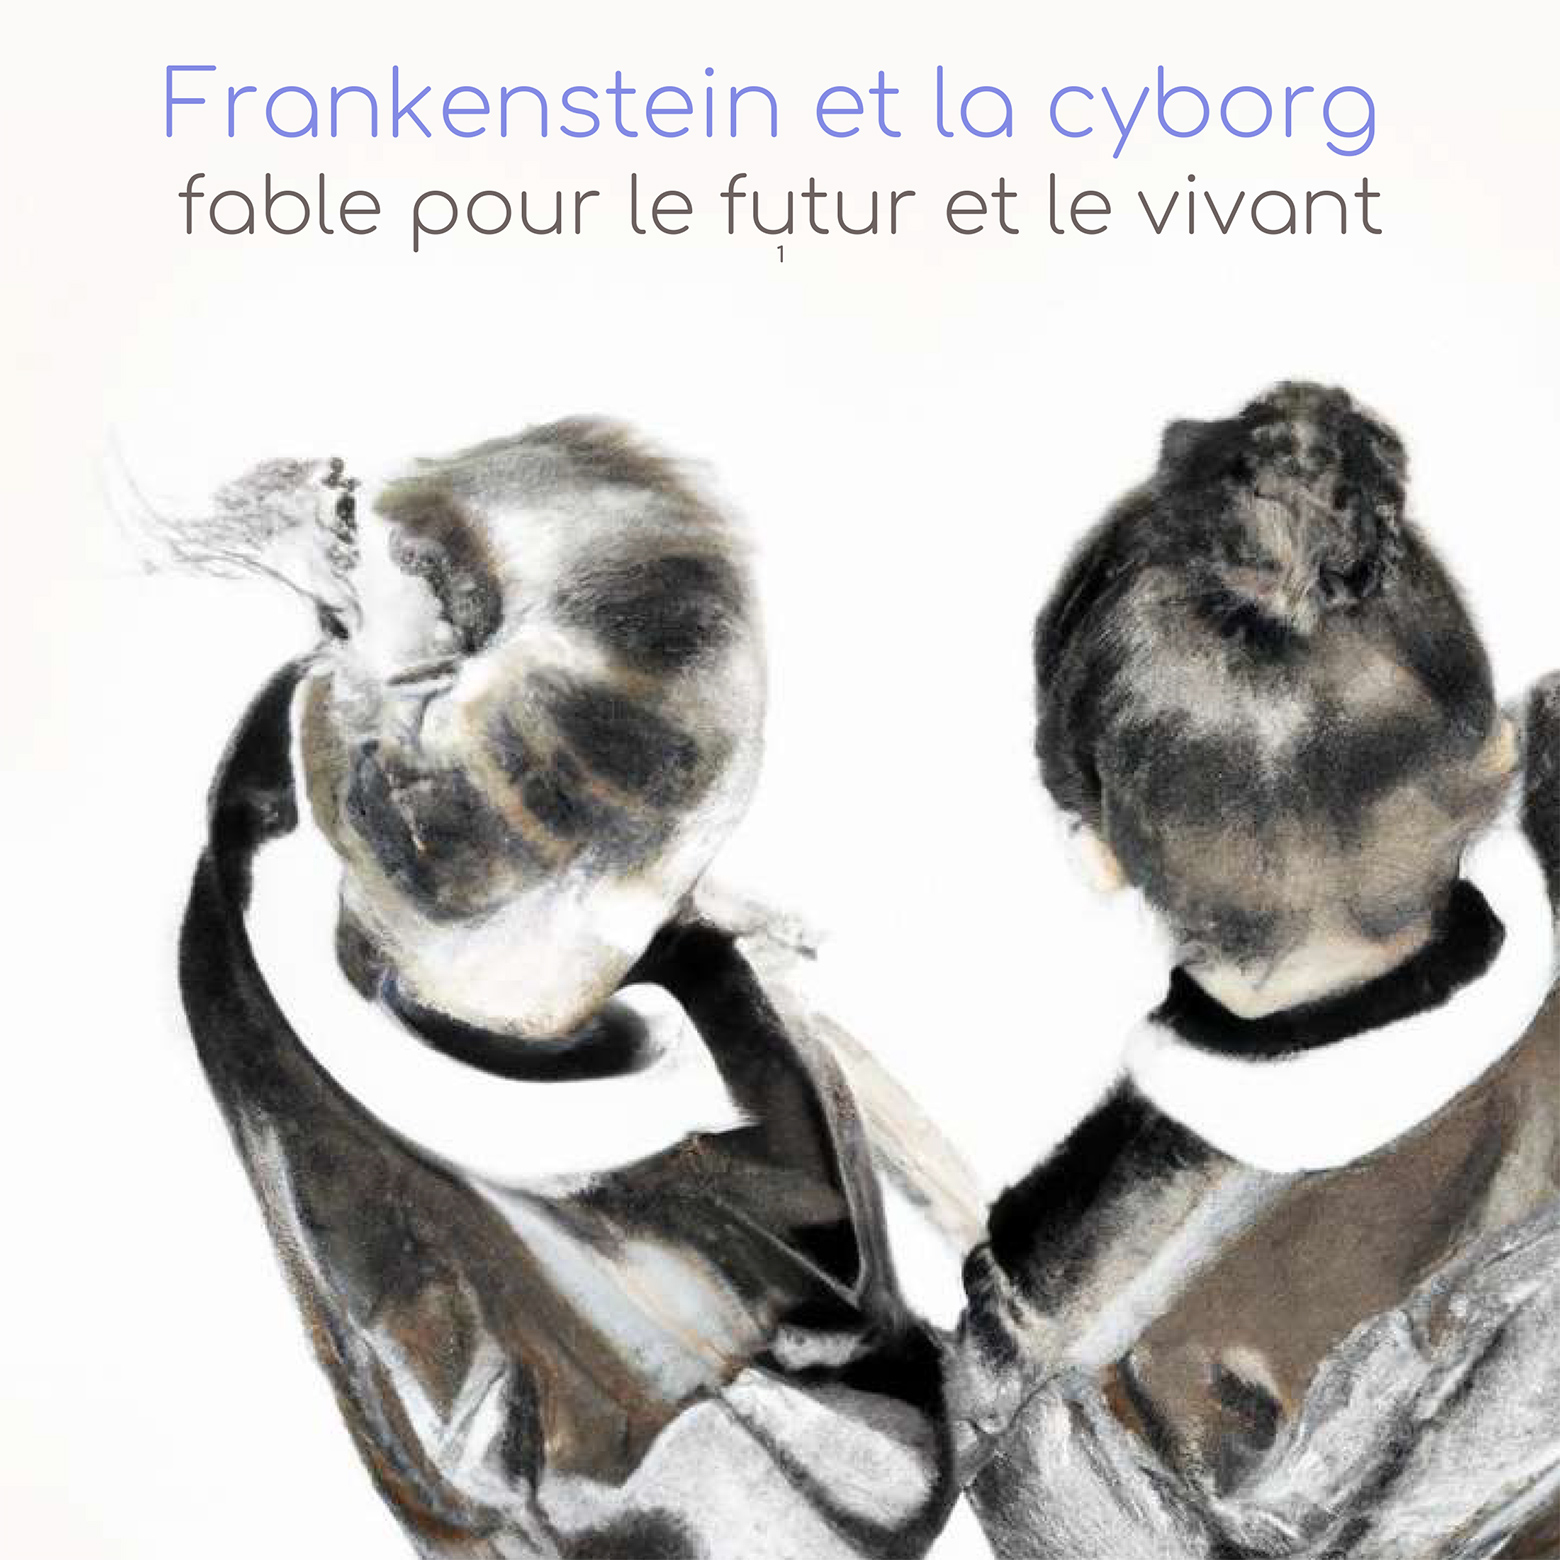 Frankenstein et la Cyborg (fable pour le futur et le vivant)